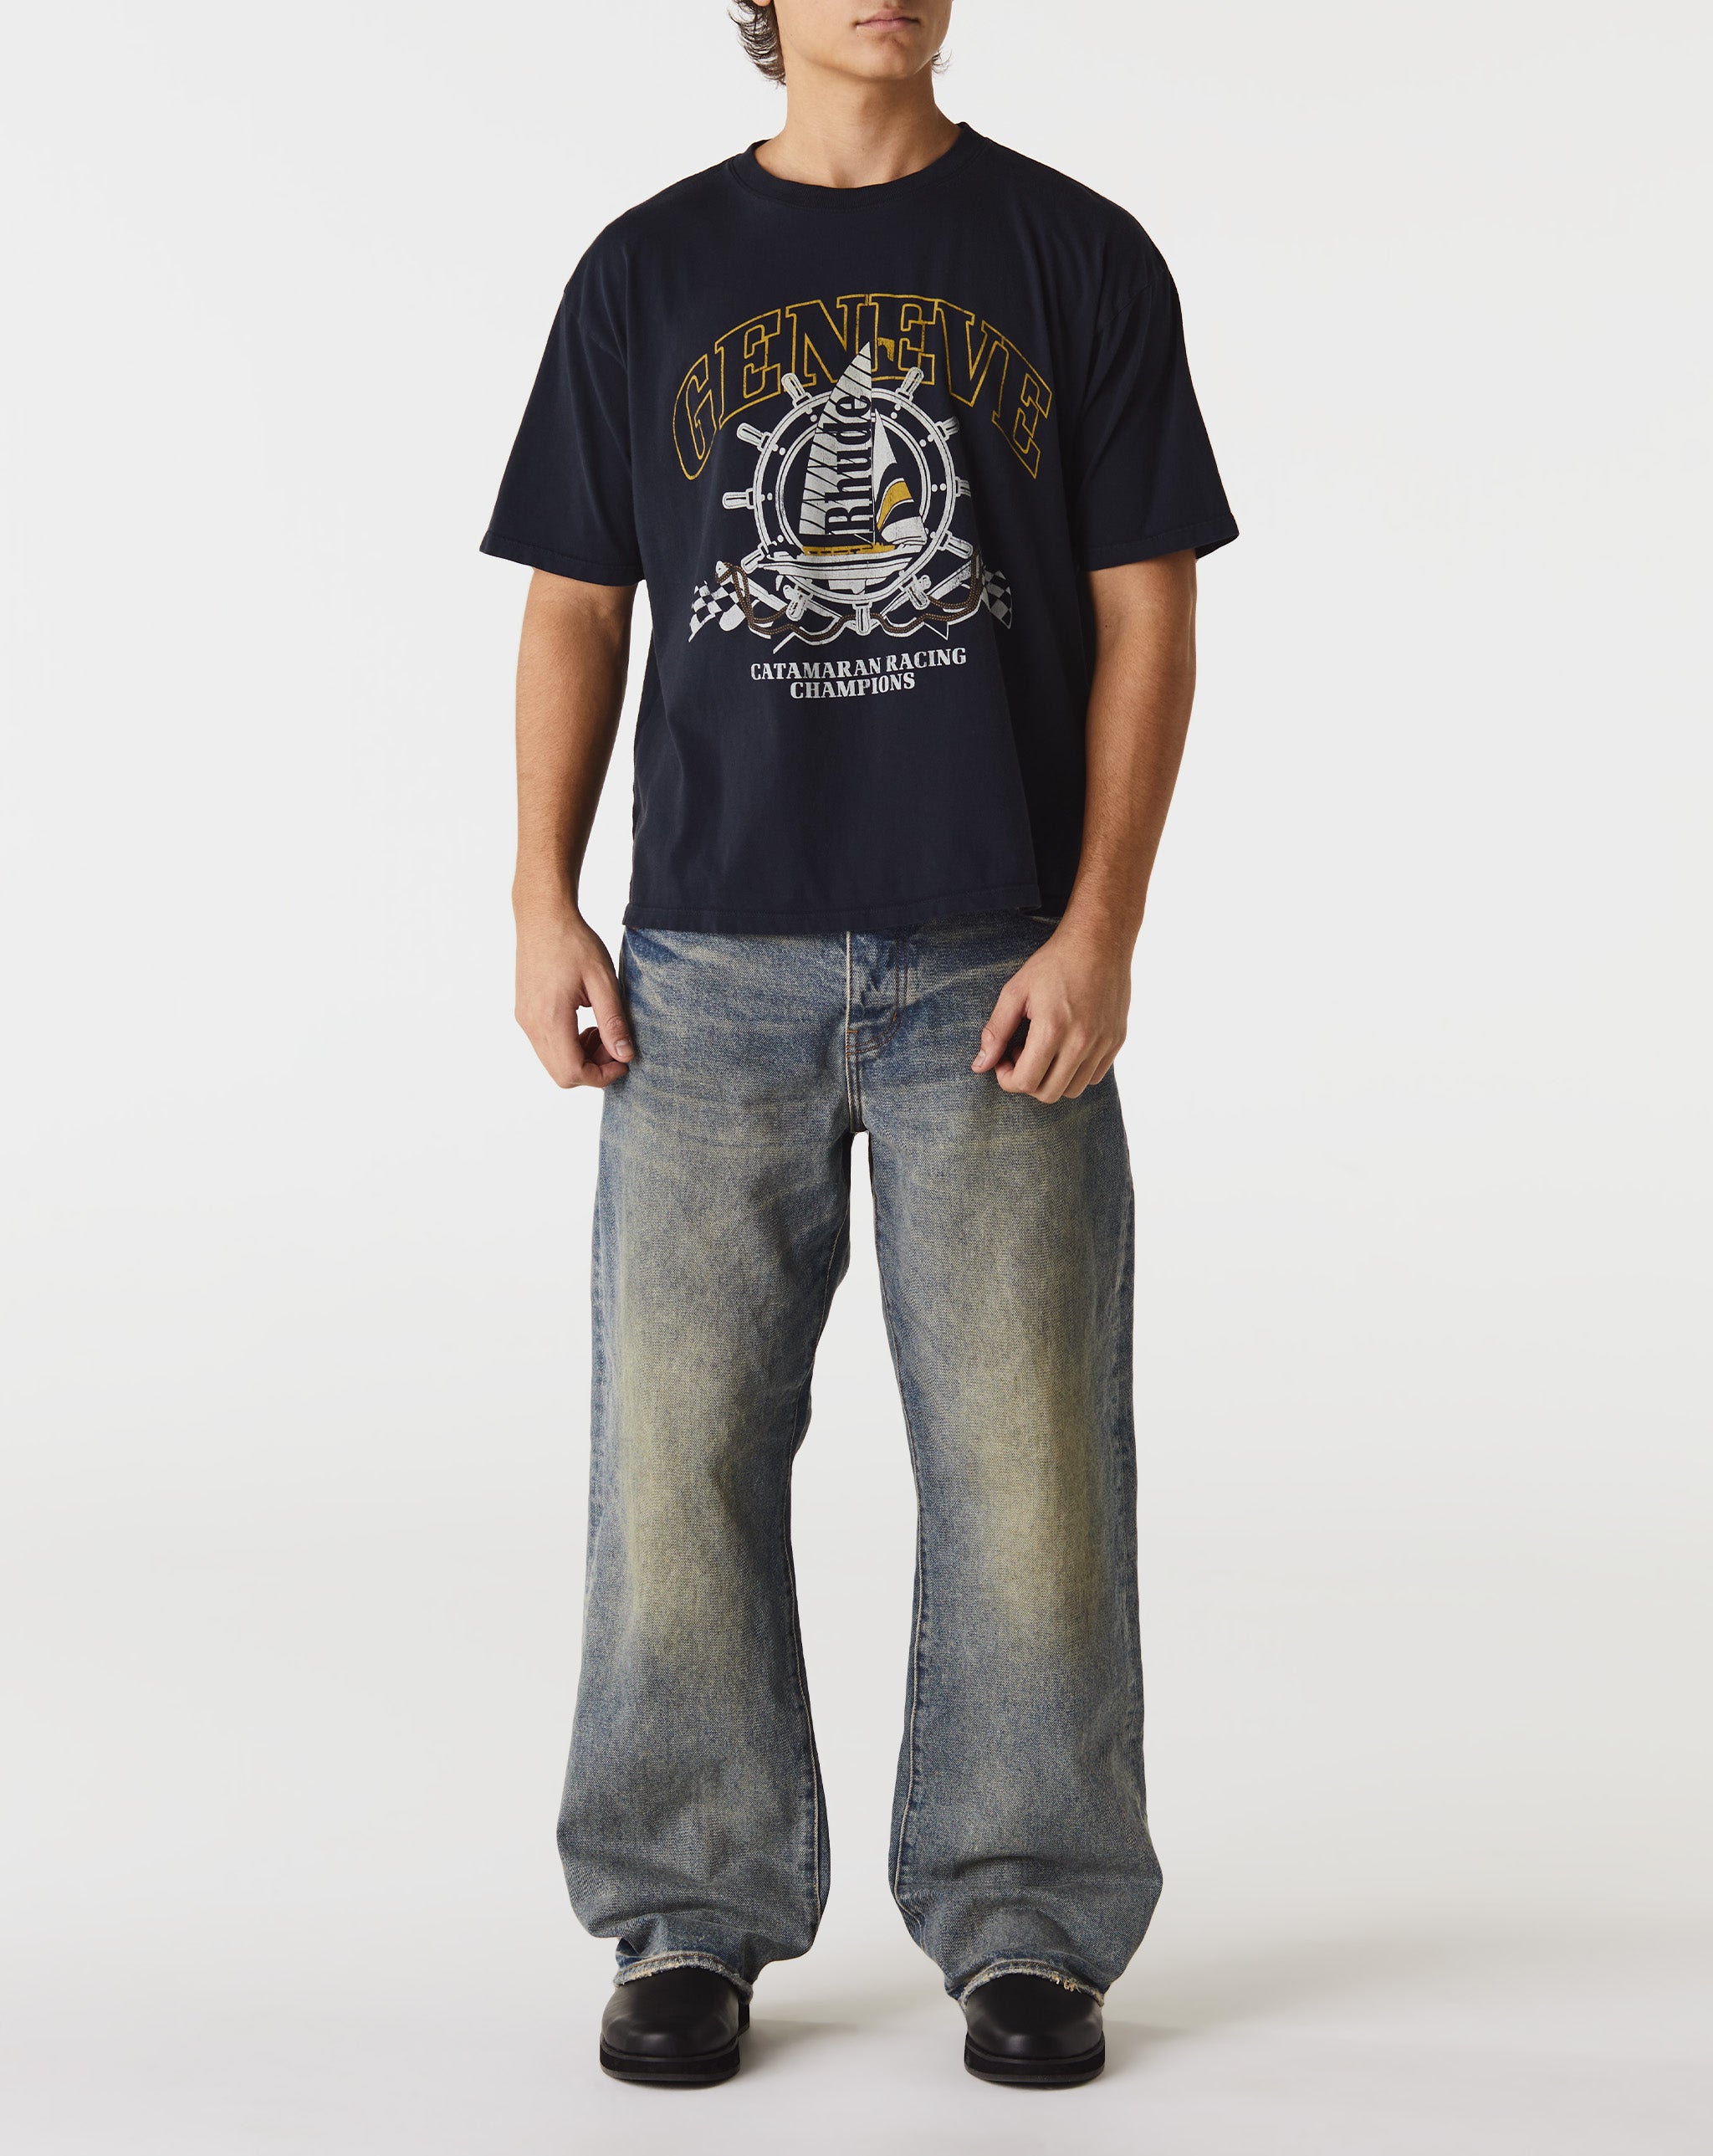 Rhude Azur Mirror T-Shirt  - Cheap Urlfreeze Jordan outlet